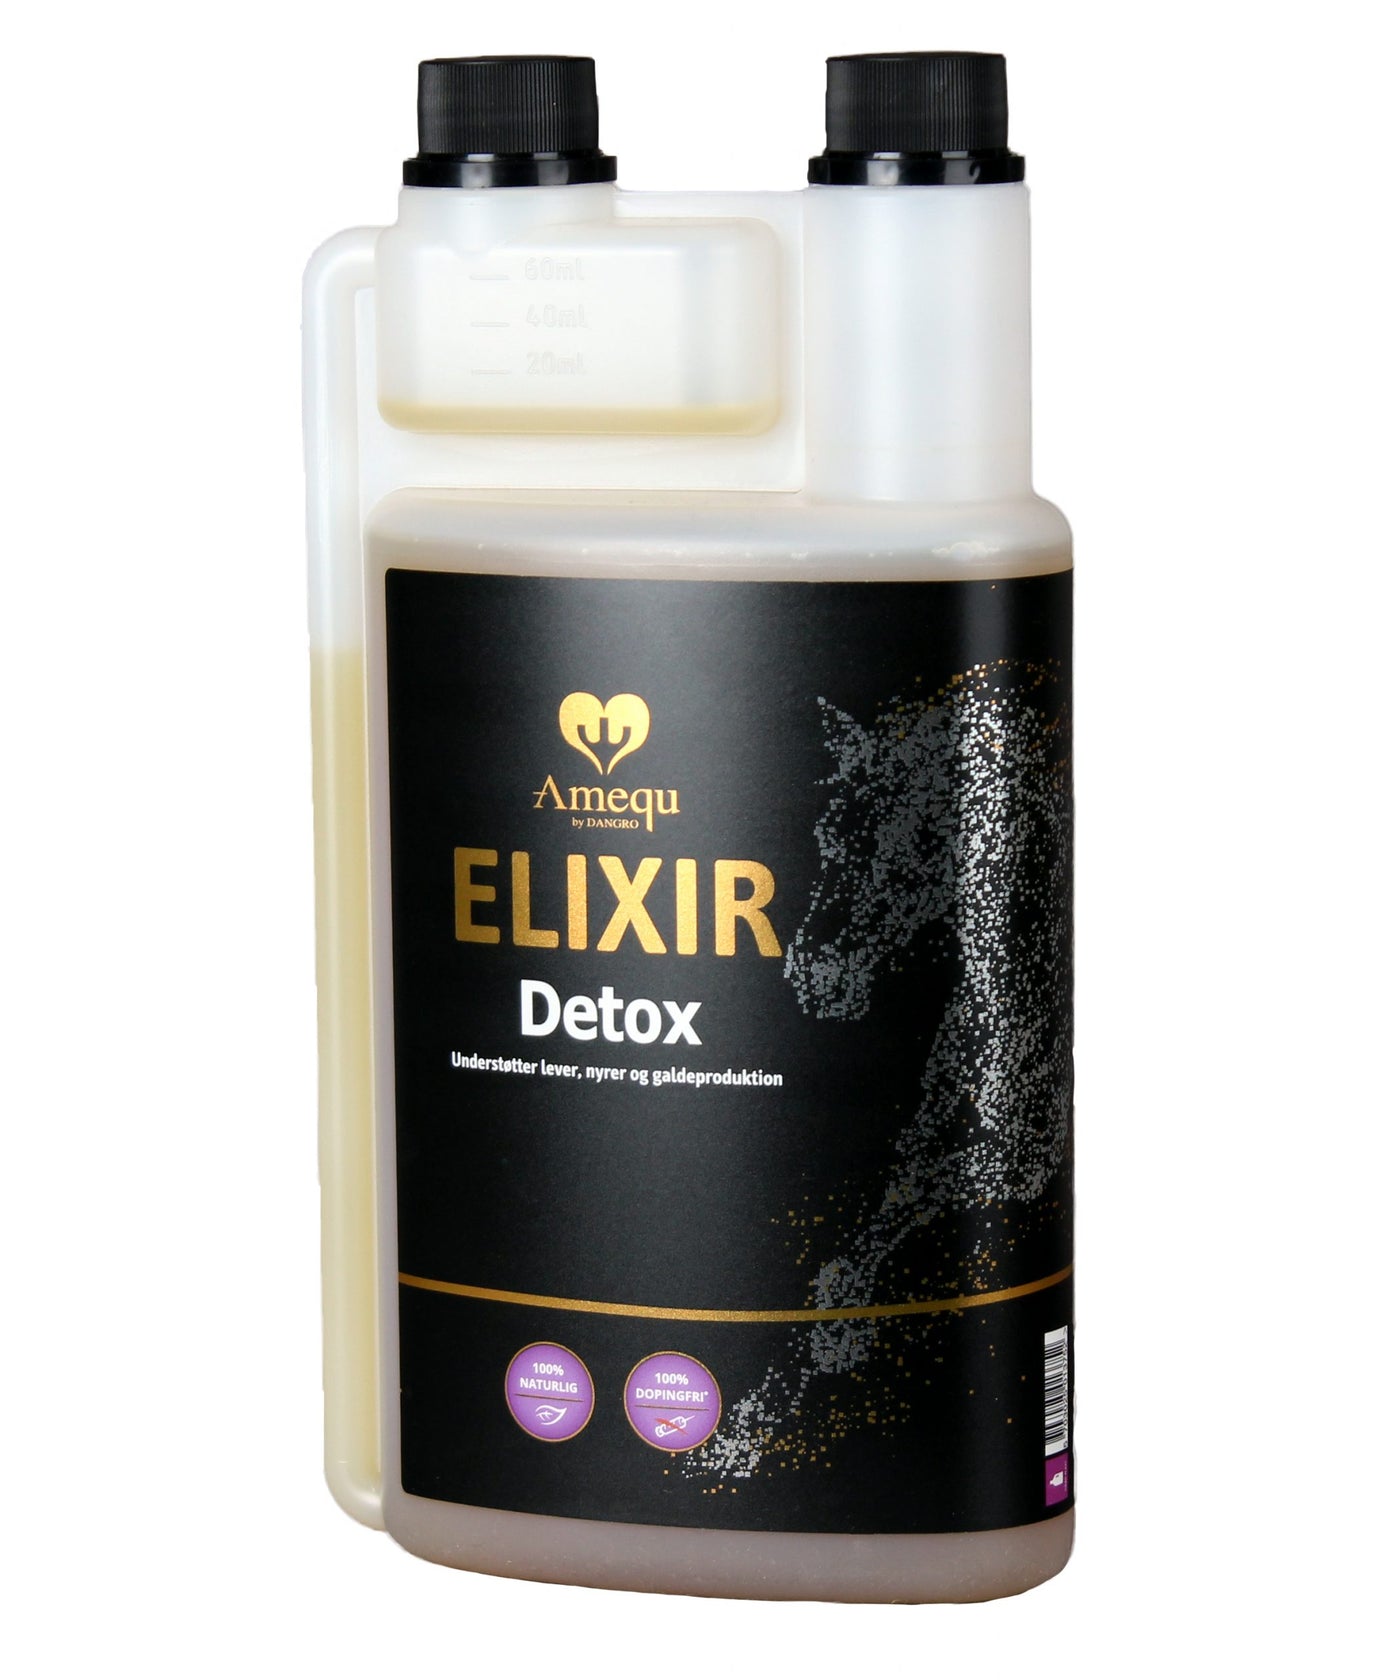 Amequ Elixir Detox